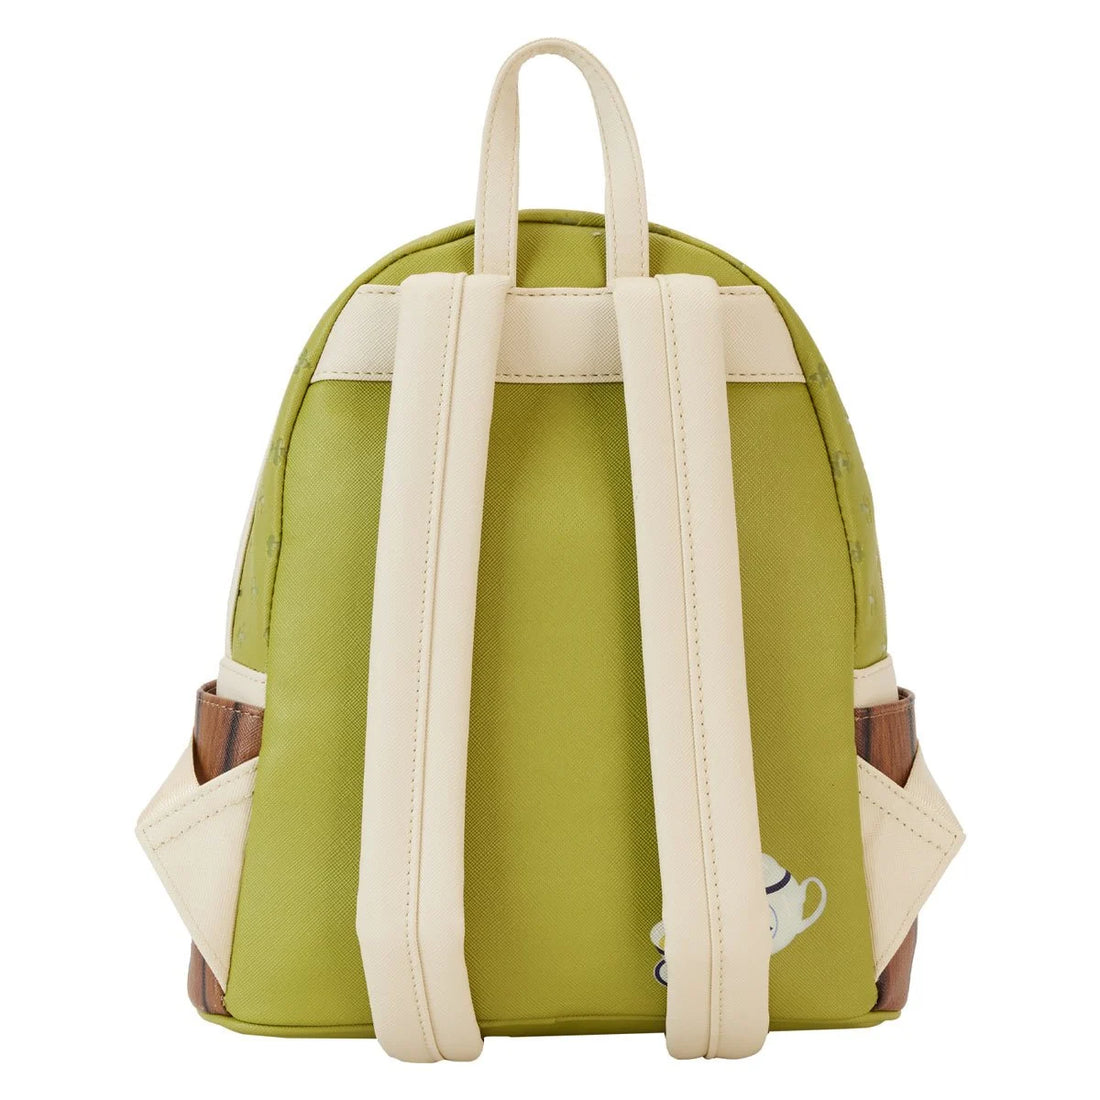 Loungefly Disney Pixar Bao Bamboo Steamer Mini-Backpack